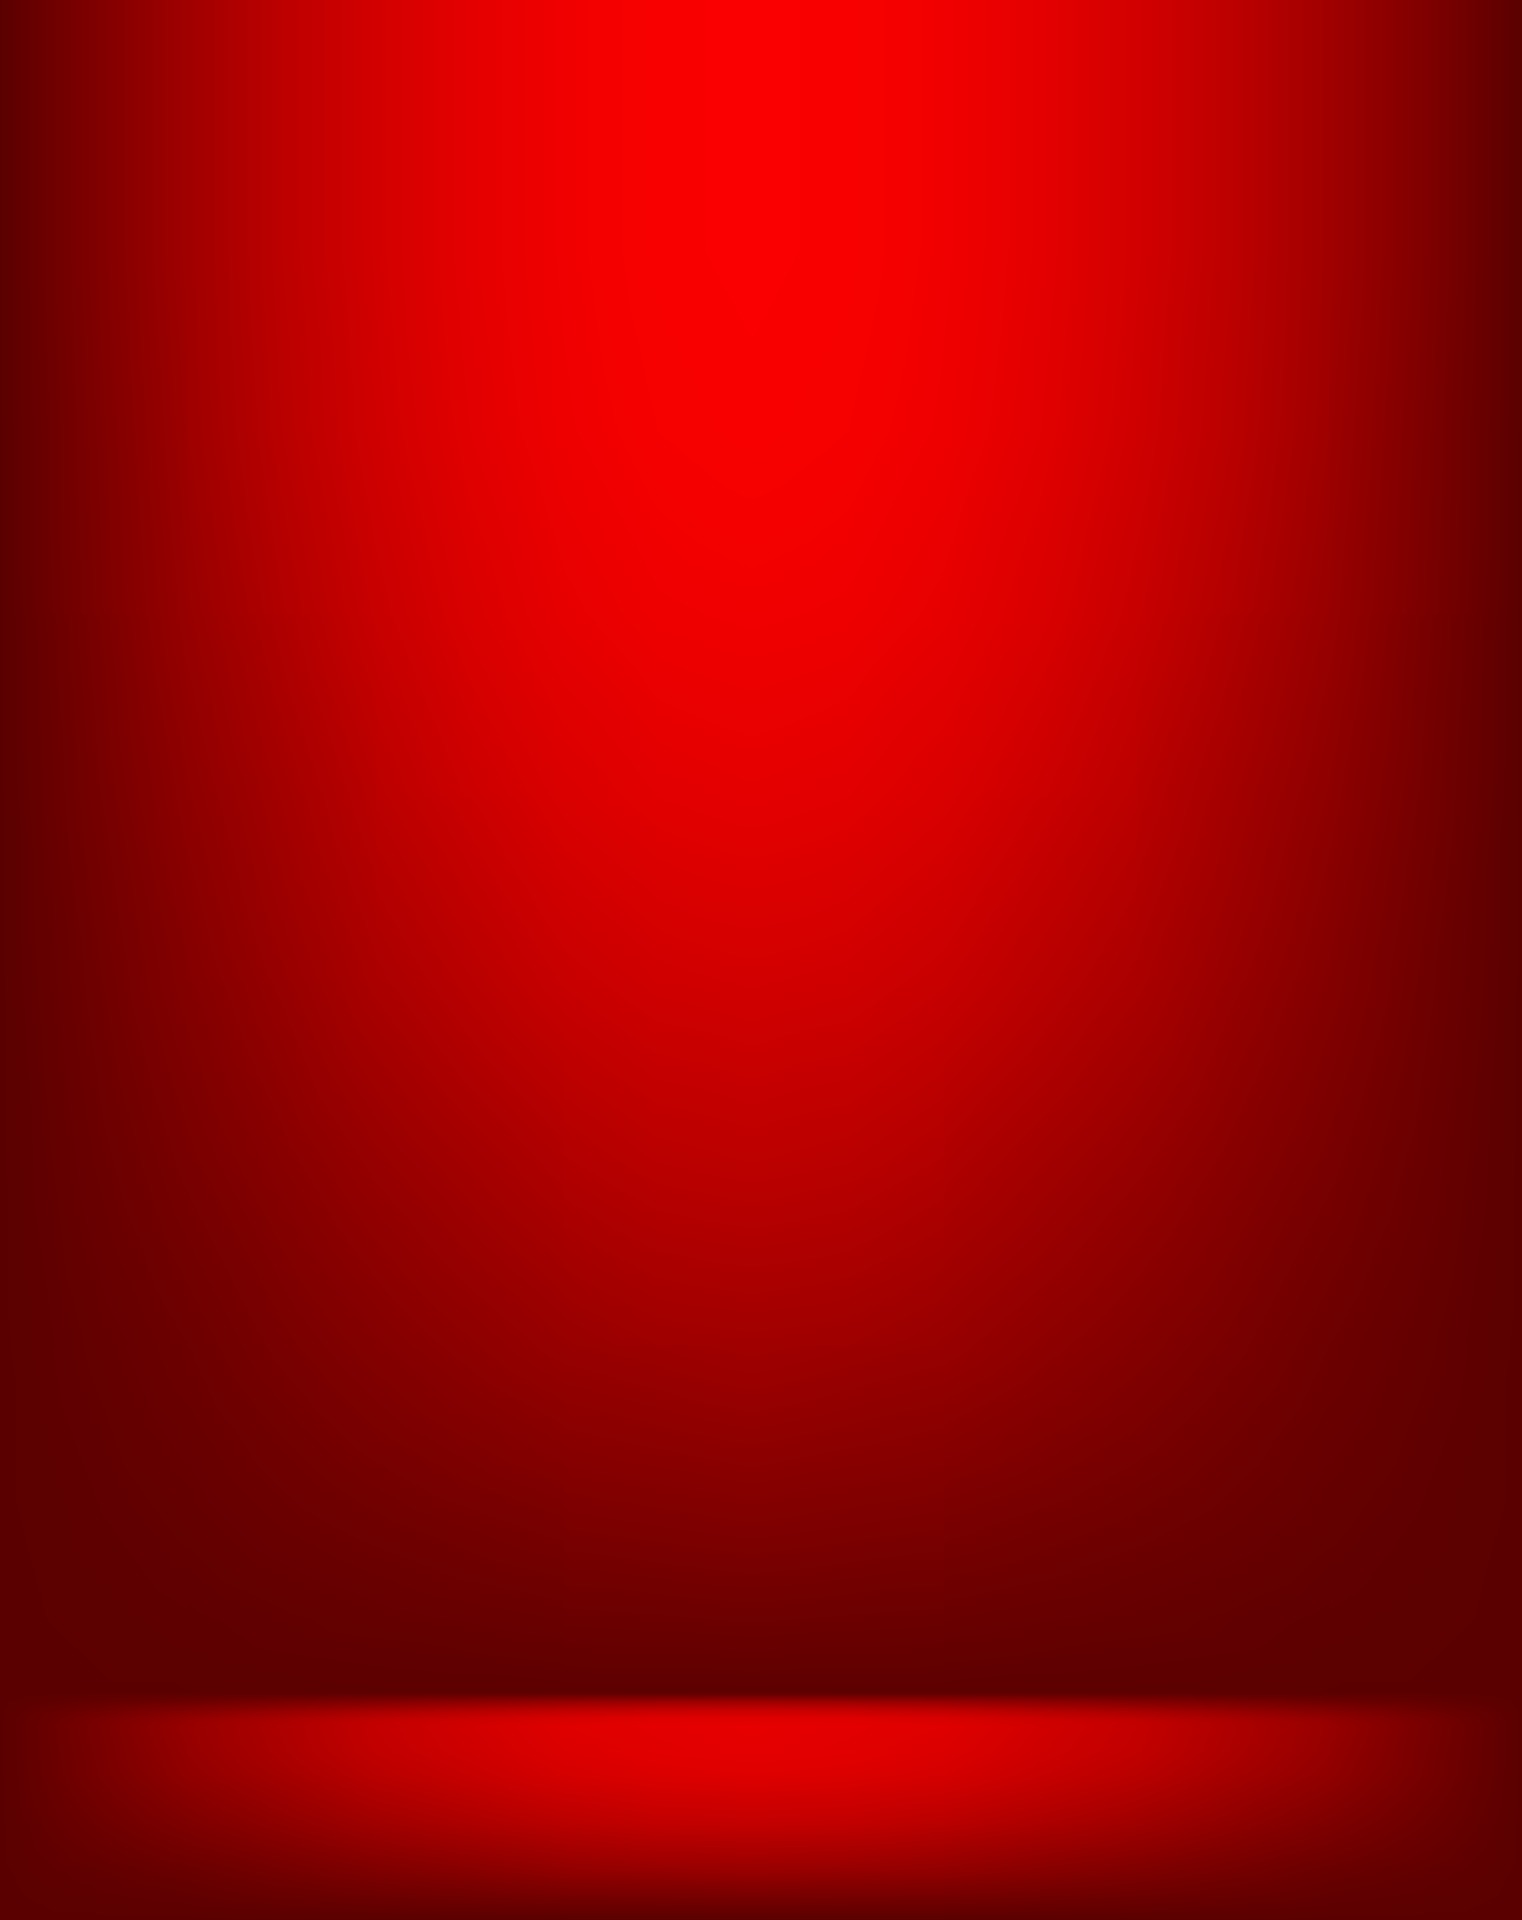 Phòng studio trống màu đỏ: Chiêm ngưỡng phòng studio trống trải dài trên nền tường màu đỏ tươi sáng. Với bầu không khí trong lành và sự tĩnh lặng, không gian này sẽ giúp bạn tập trung vào công việc của mình. Đừng bỏ lỡ cơ hội để đắm mình trong một không gian trang nhã và thanh lịch như thế này.